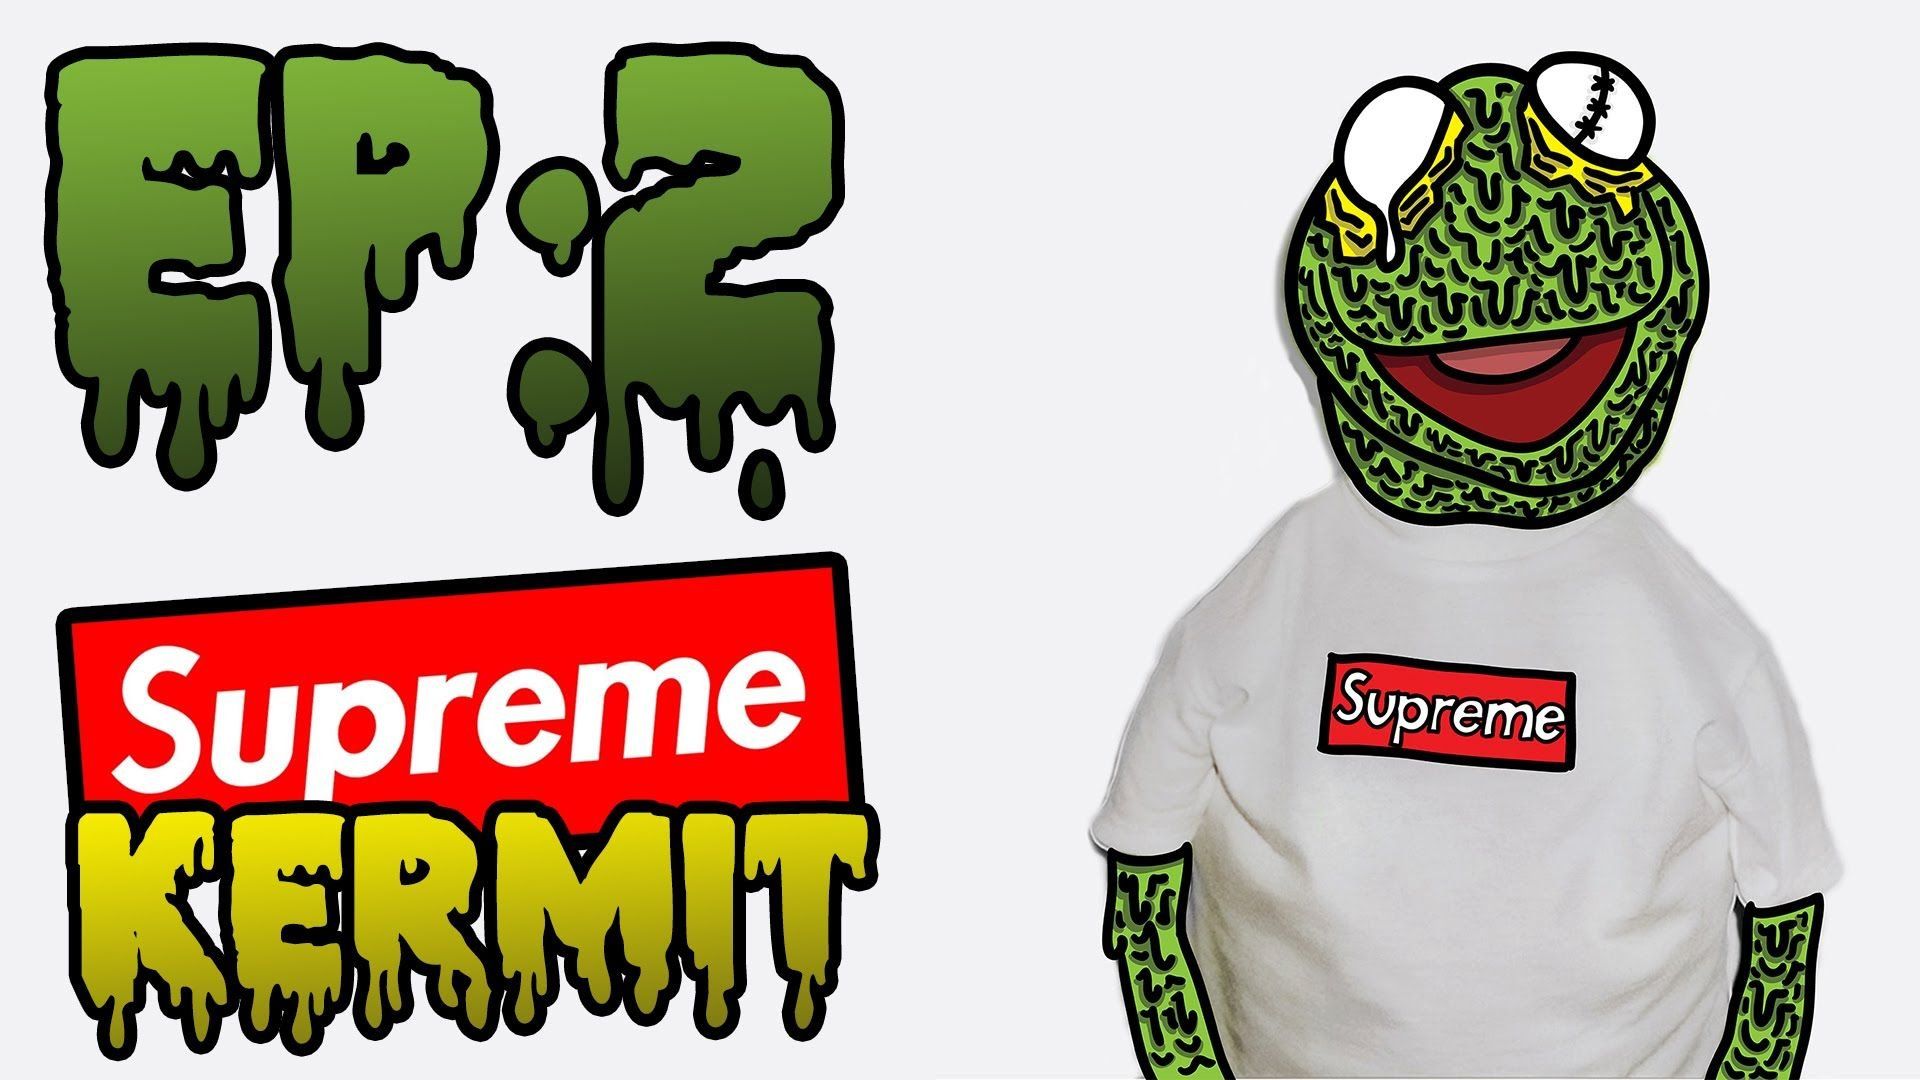 Kermit Supreme Desktop Wallpaper